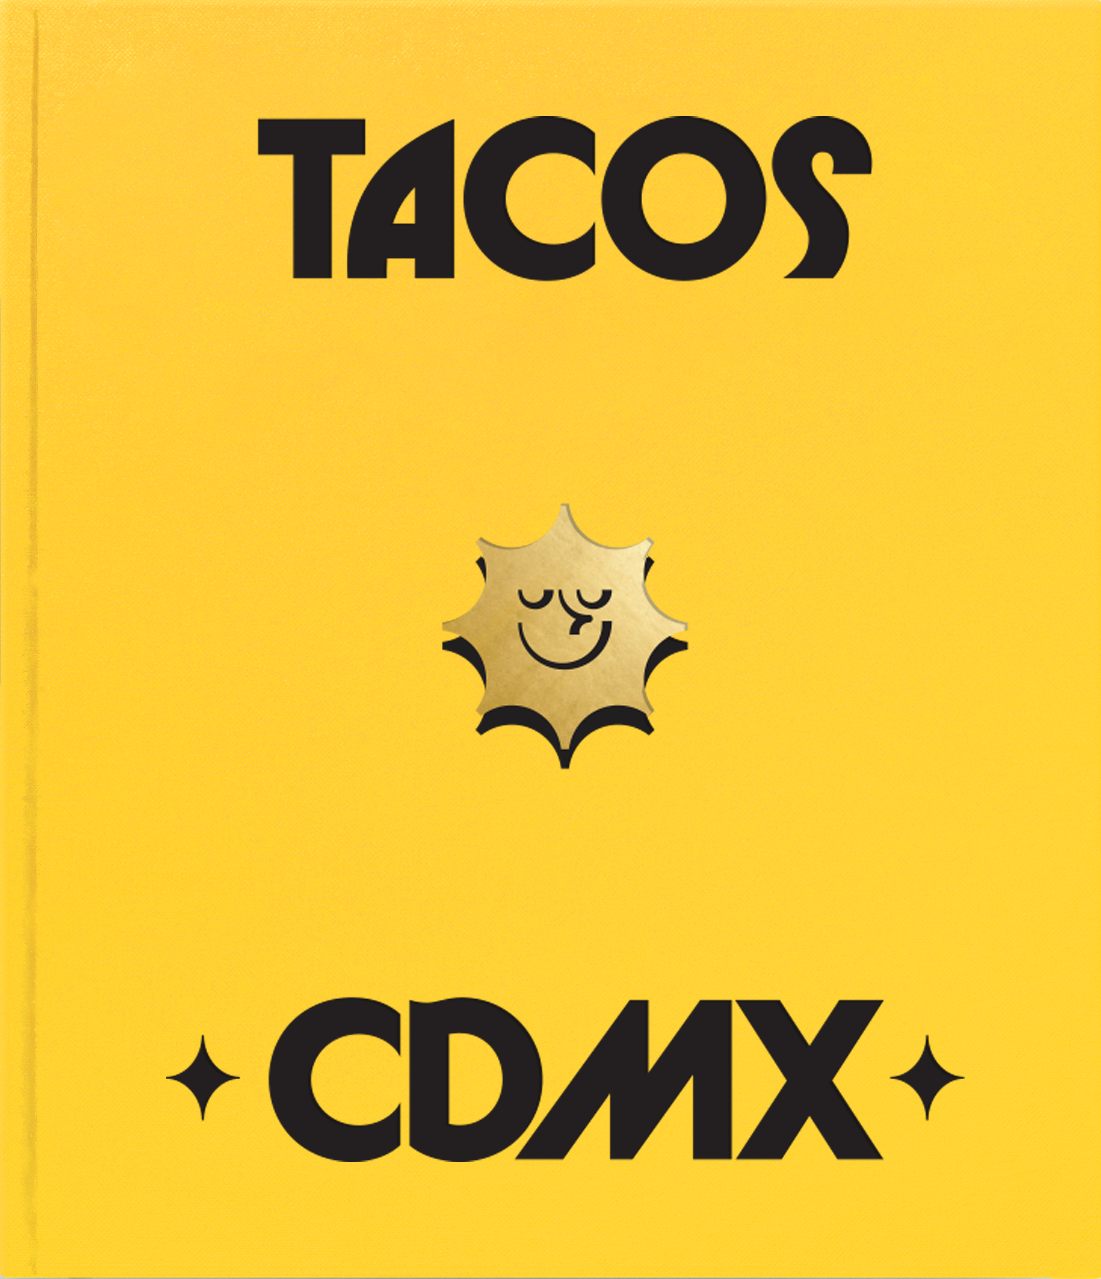 Tacos CDMX